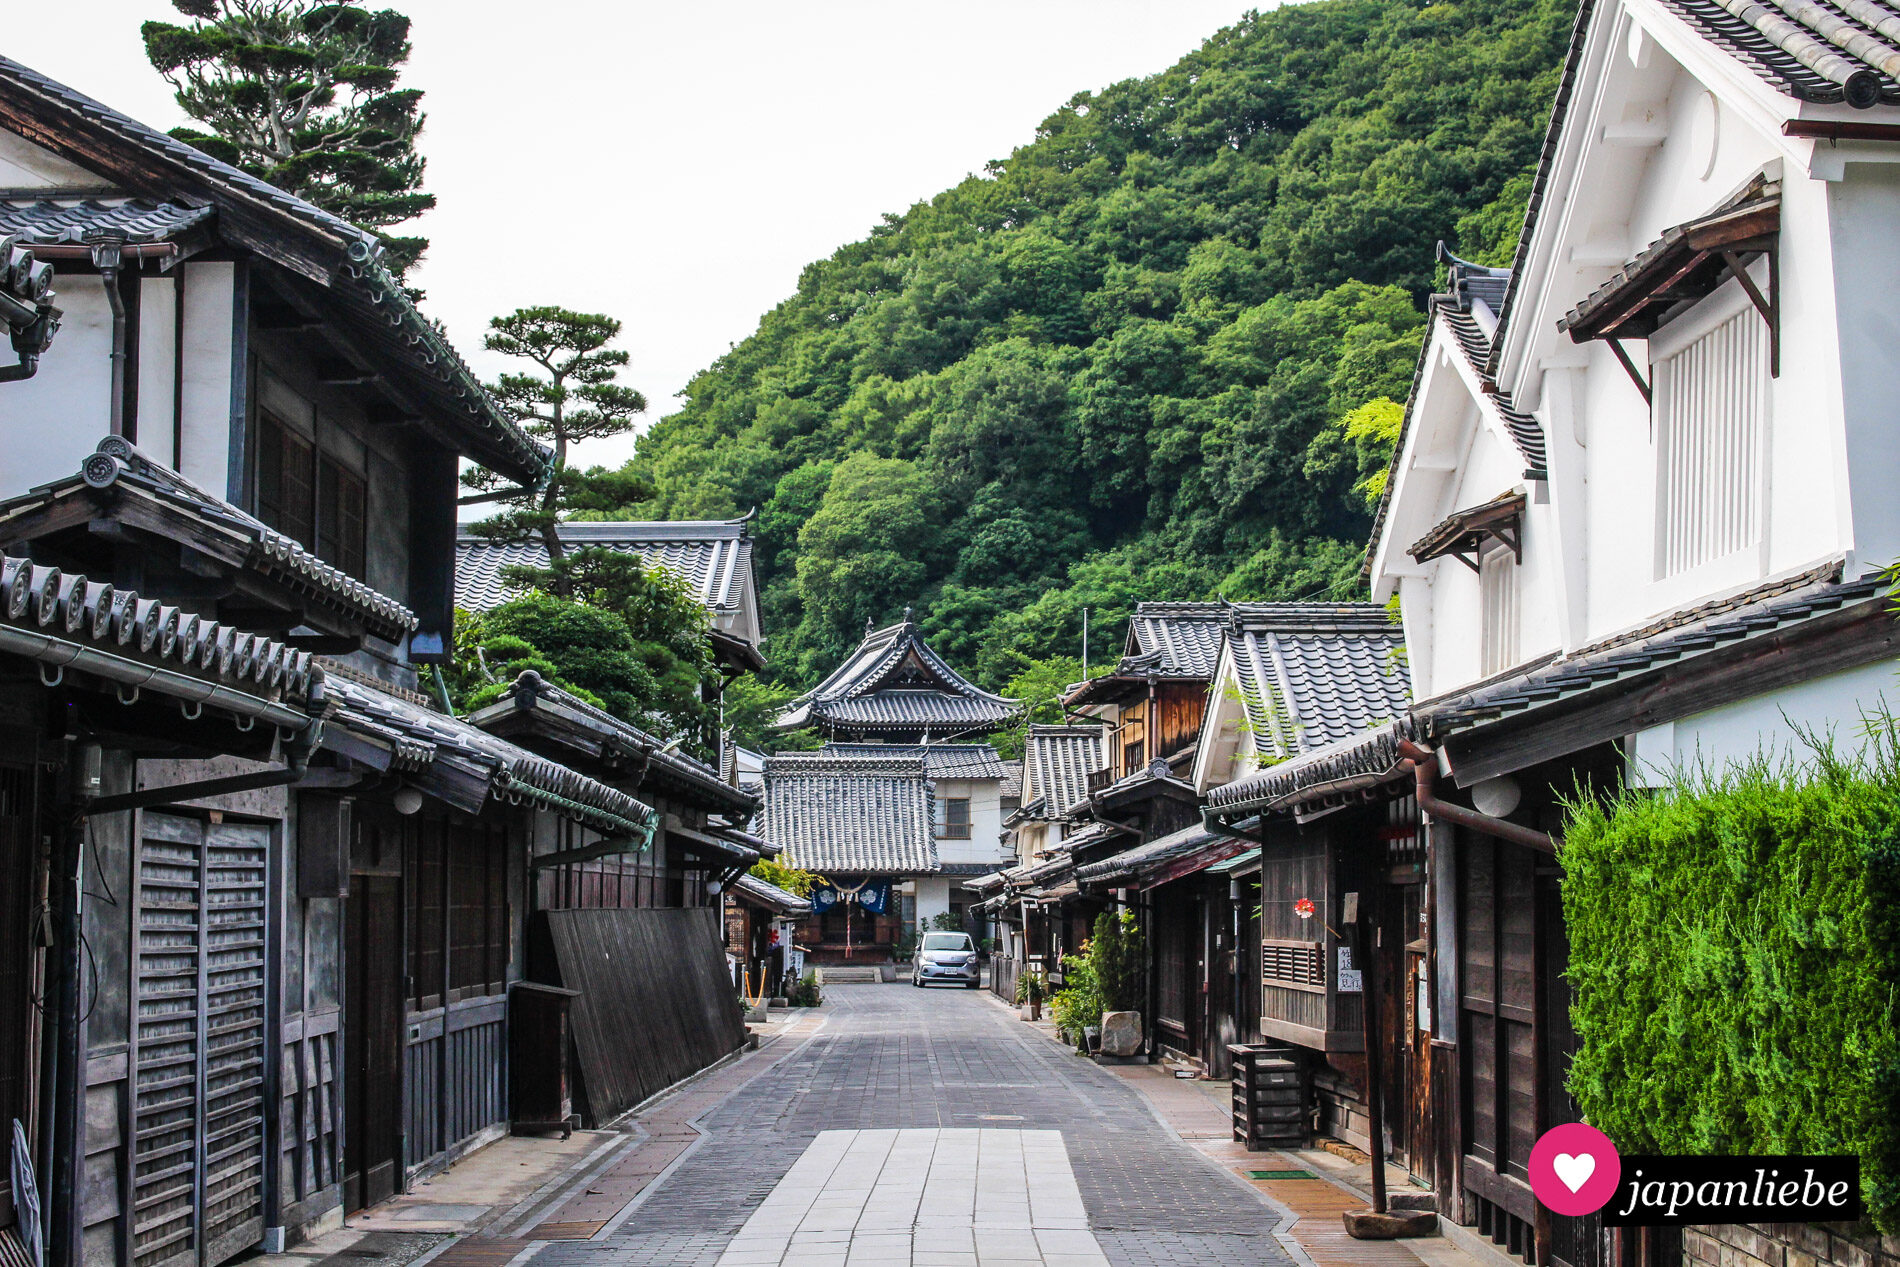 Als wäre man mittendrin in der Edo-Zeit: die Altstadt der kleinen Stadt Takehara in der Präfektur Hiroshima ist perfekt erhalten.